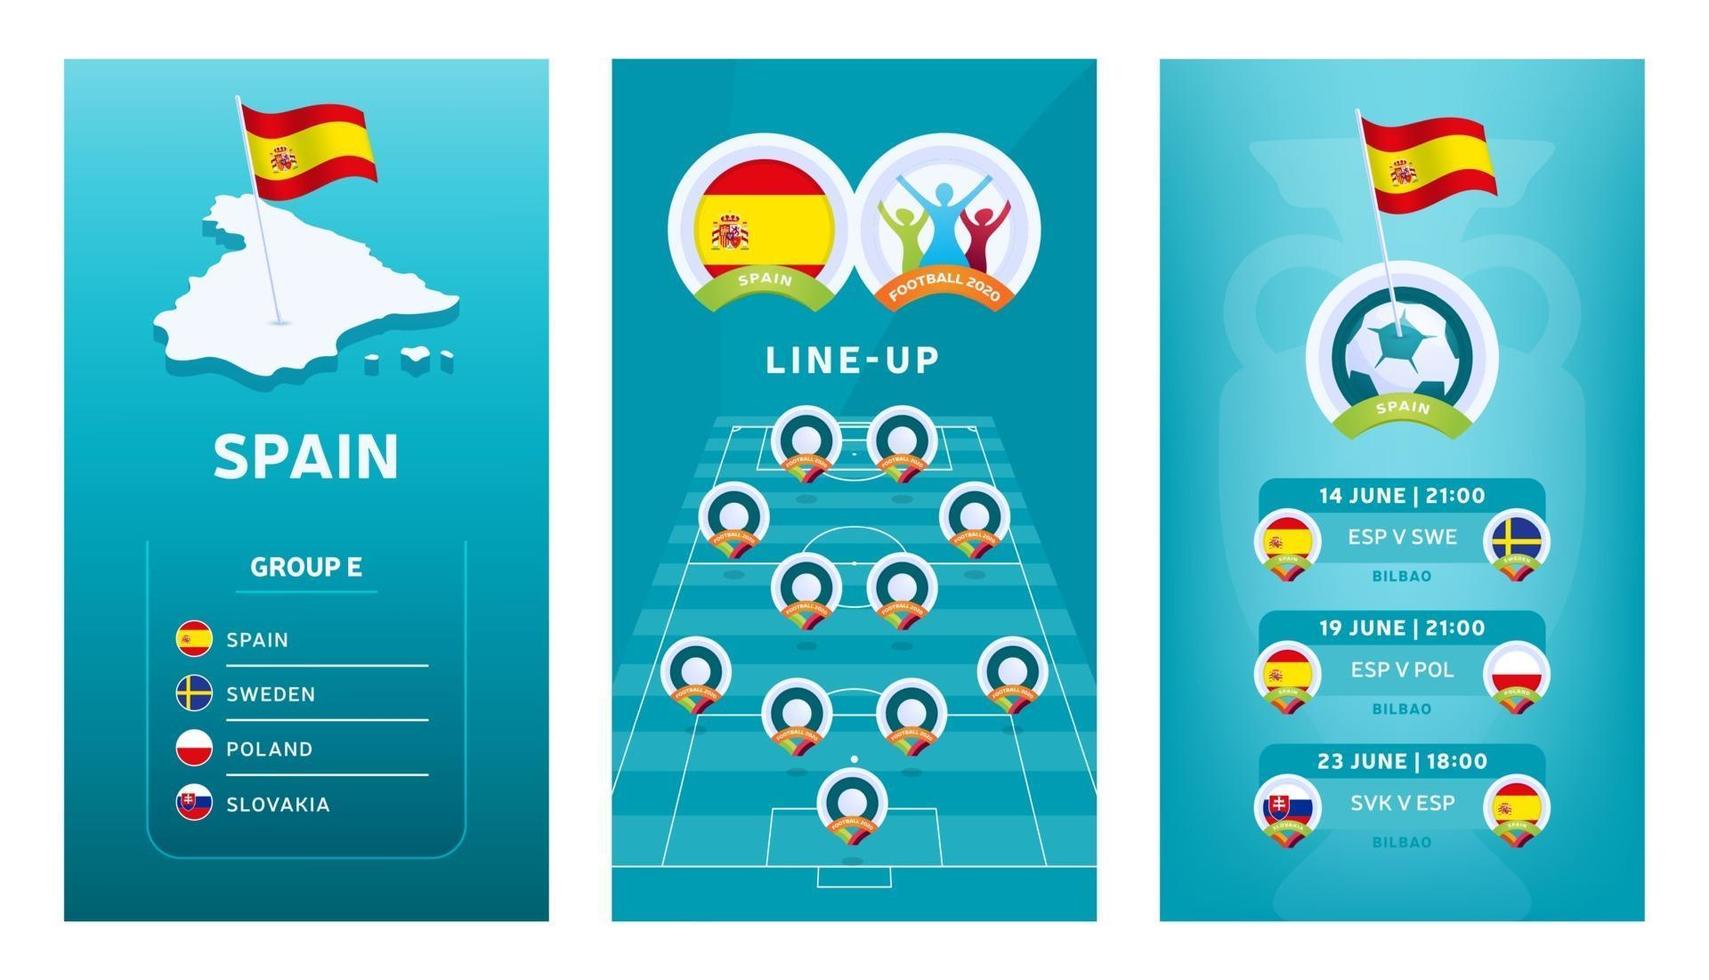 bannière verticale de football européen 2020 pour les médias sociaux. bannière du groupe e espagne avec carte isométrique, drapeau, calendrier des matchs et alignement sur le terrain de football vecteur